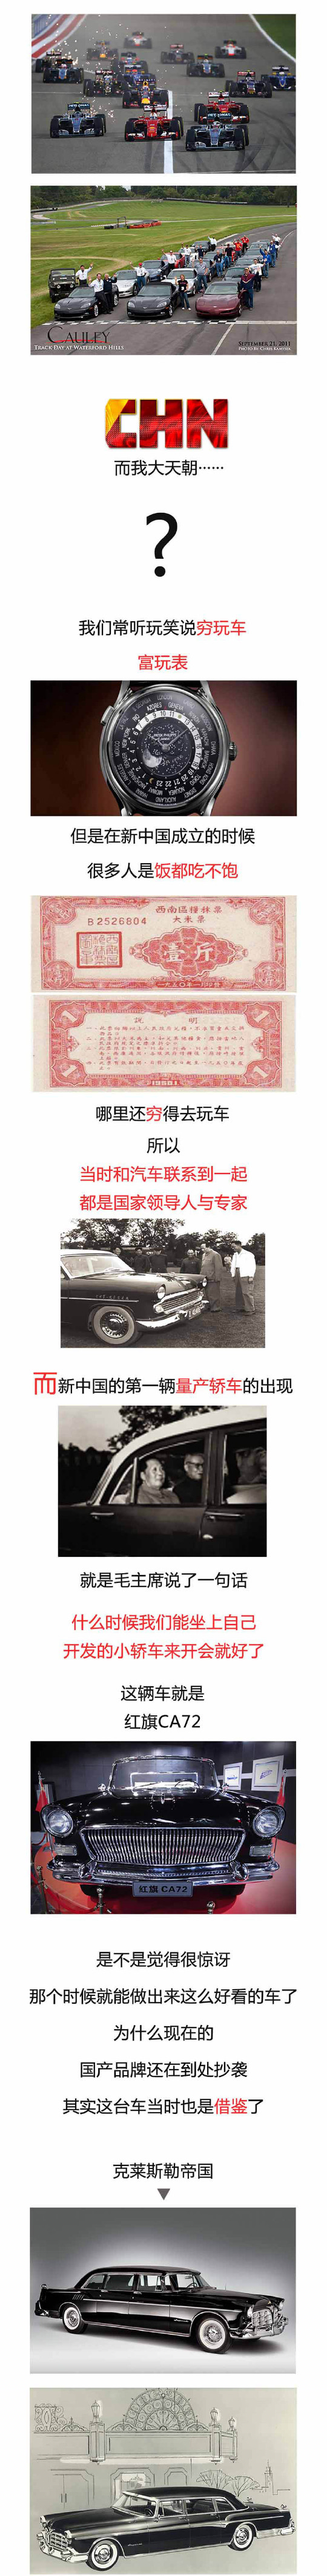 当年一辆桑塔纳能抵三栋房，中国独有的汽车文化|JJ漫谈车文化